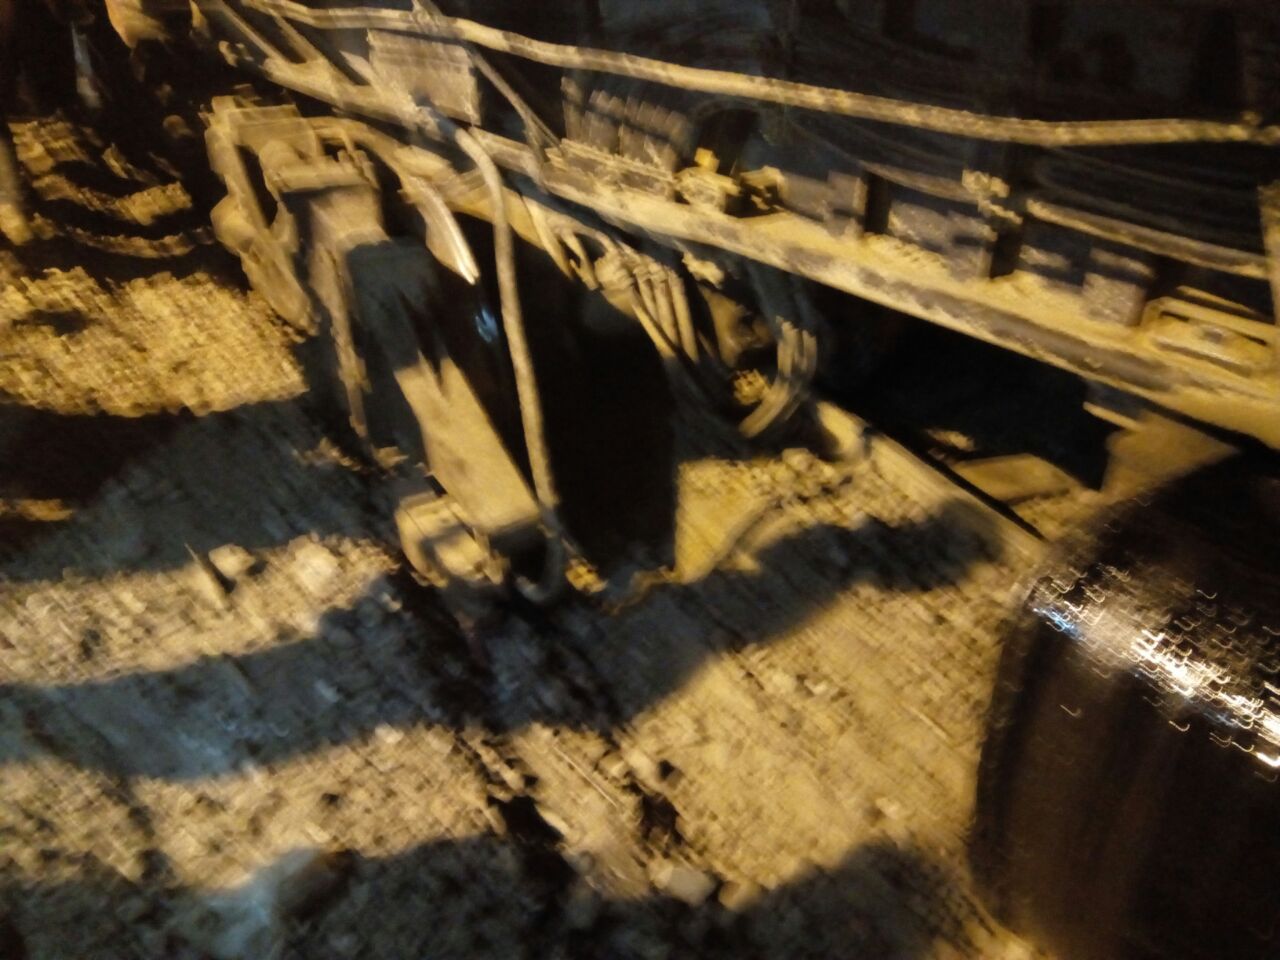 خروج قطبان جرار قطار عن القضبان وتوقف حركة القطارات بكفر الشيخ  (17)